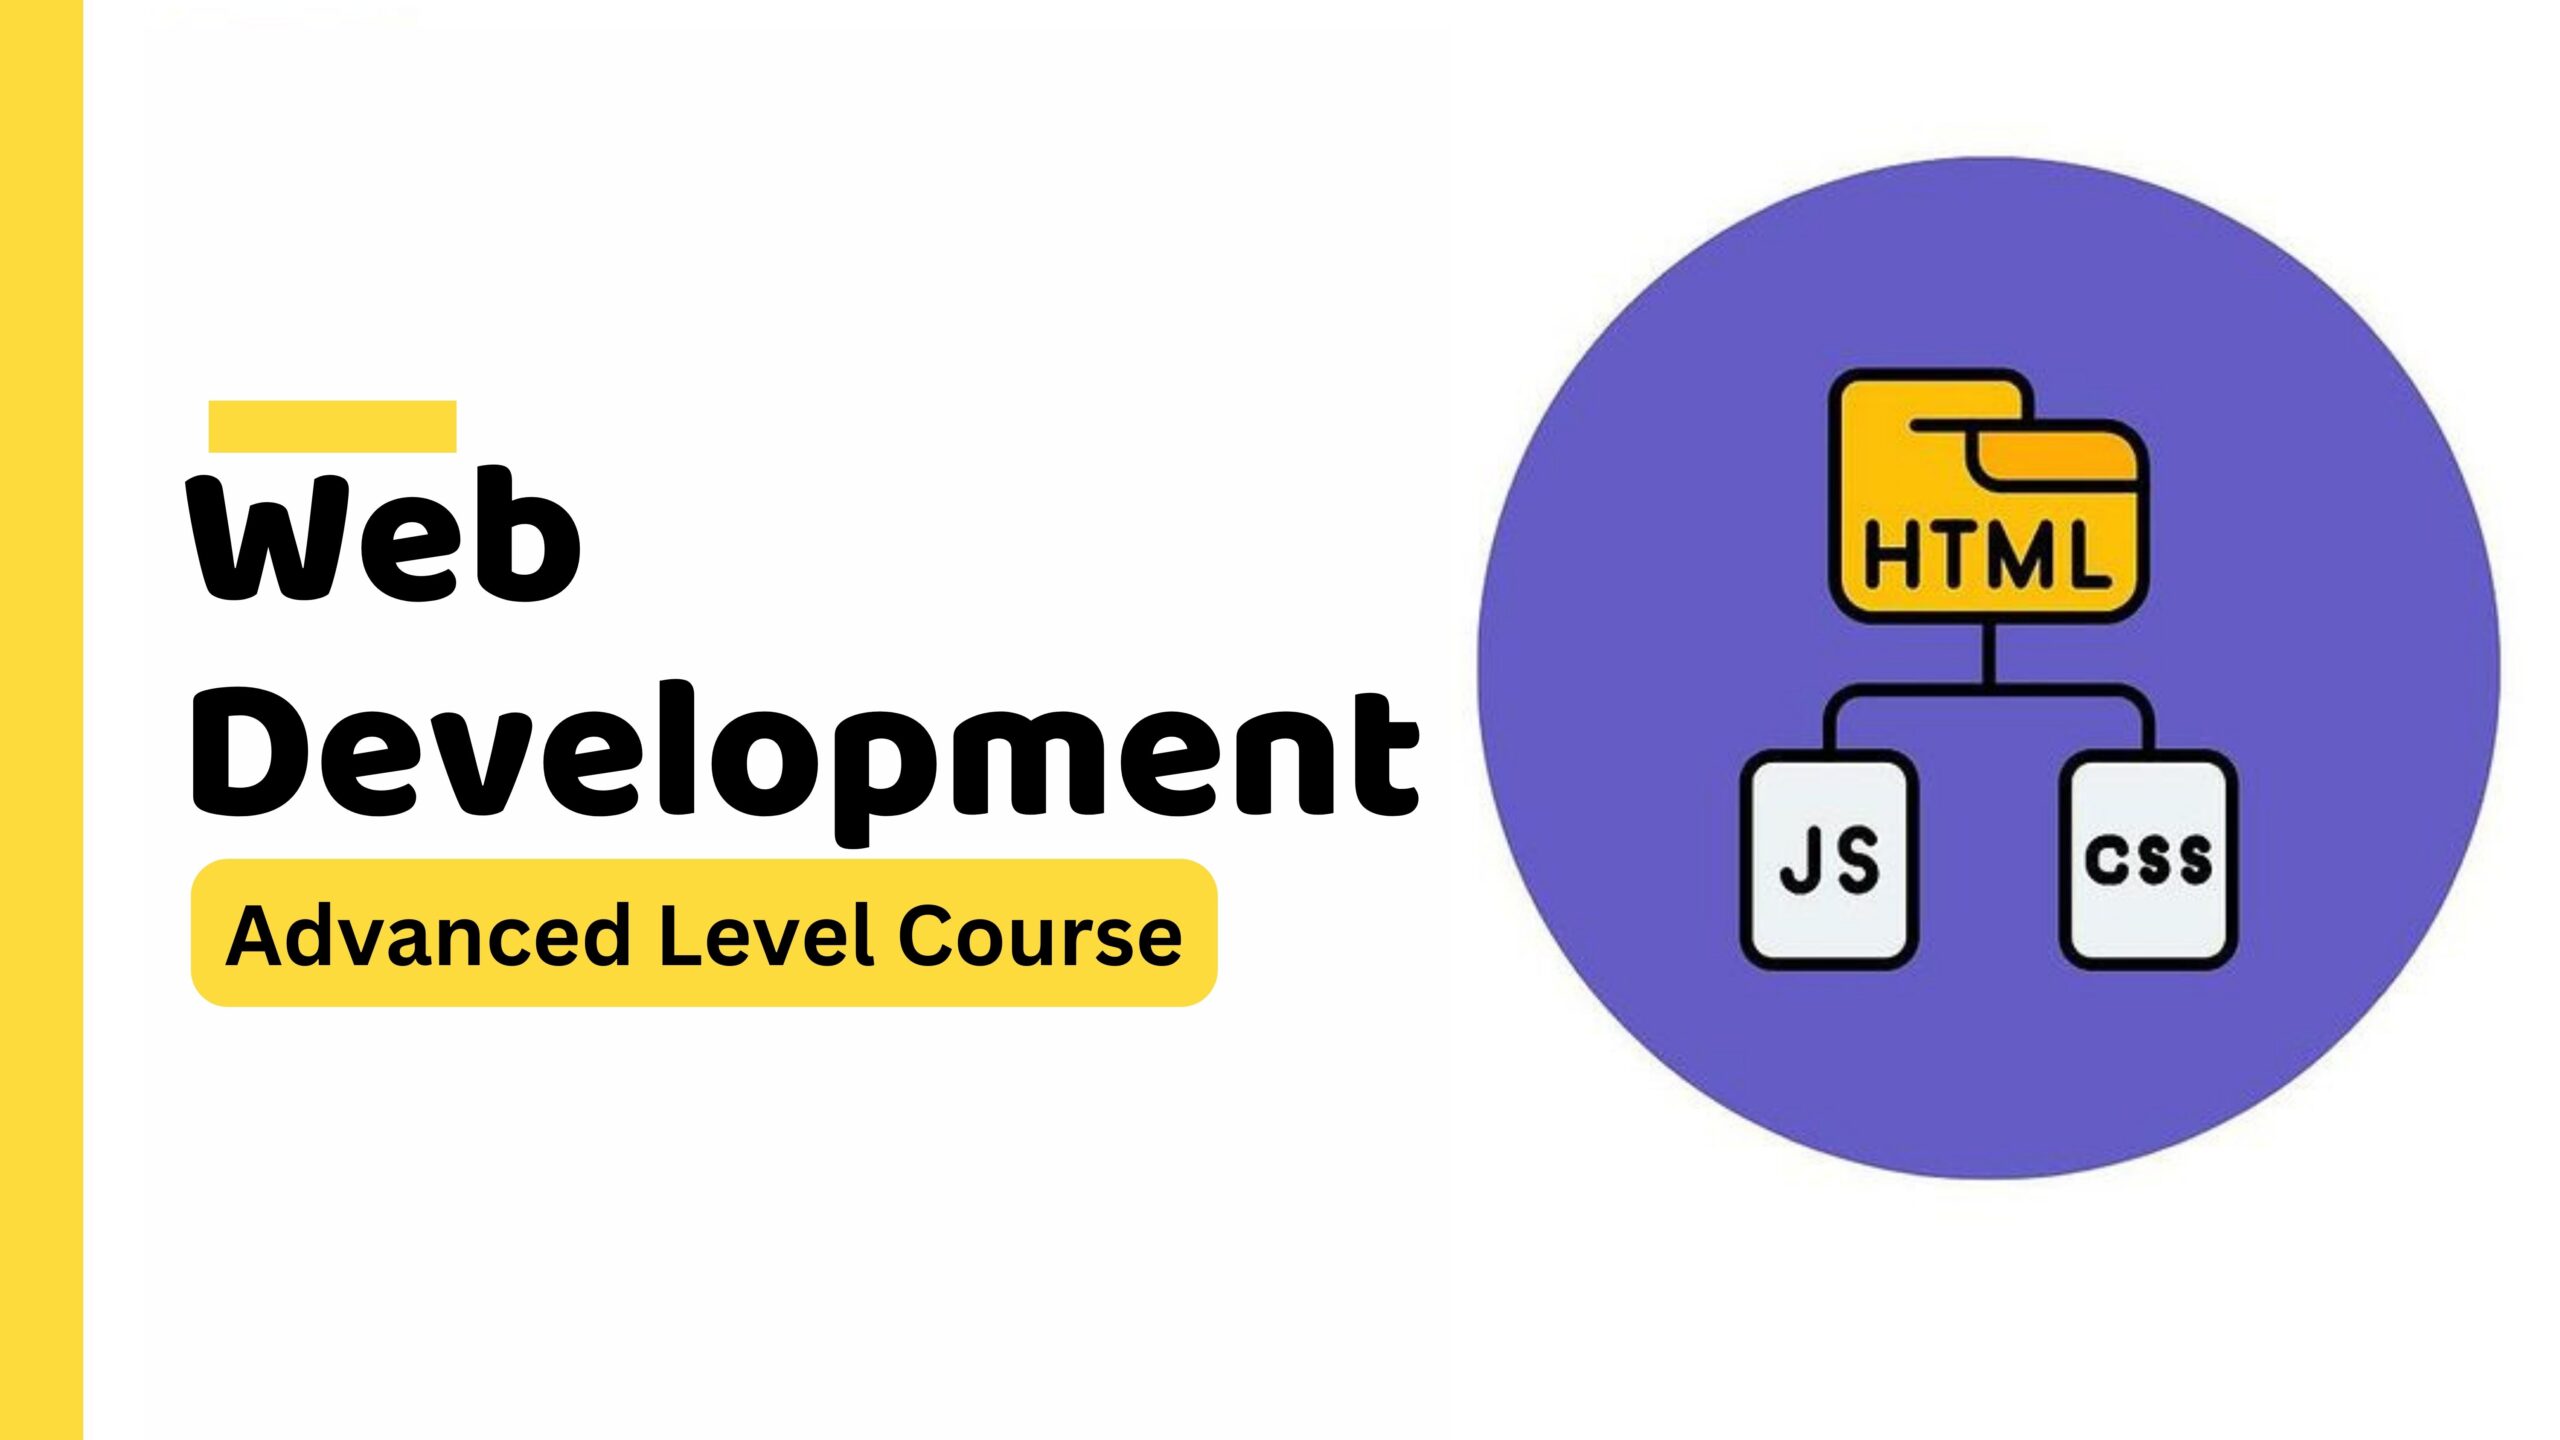 Web Developer Course